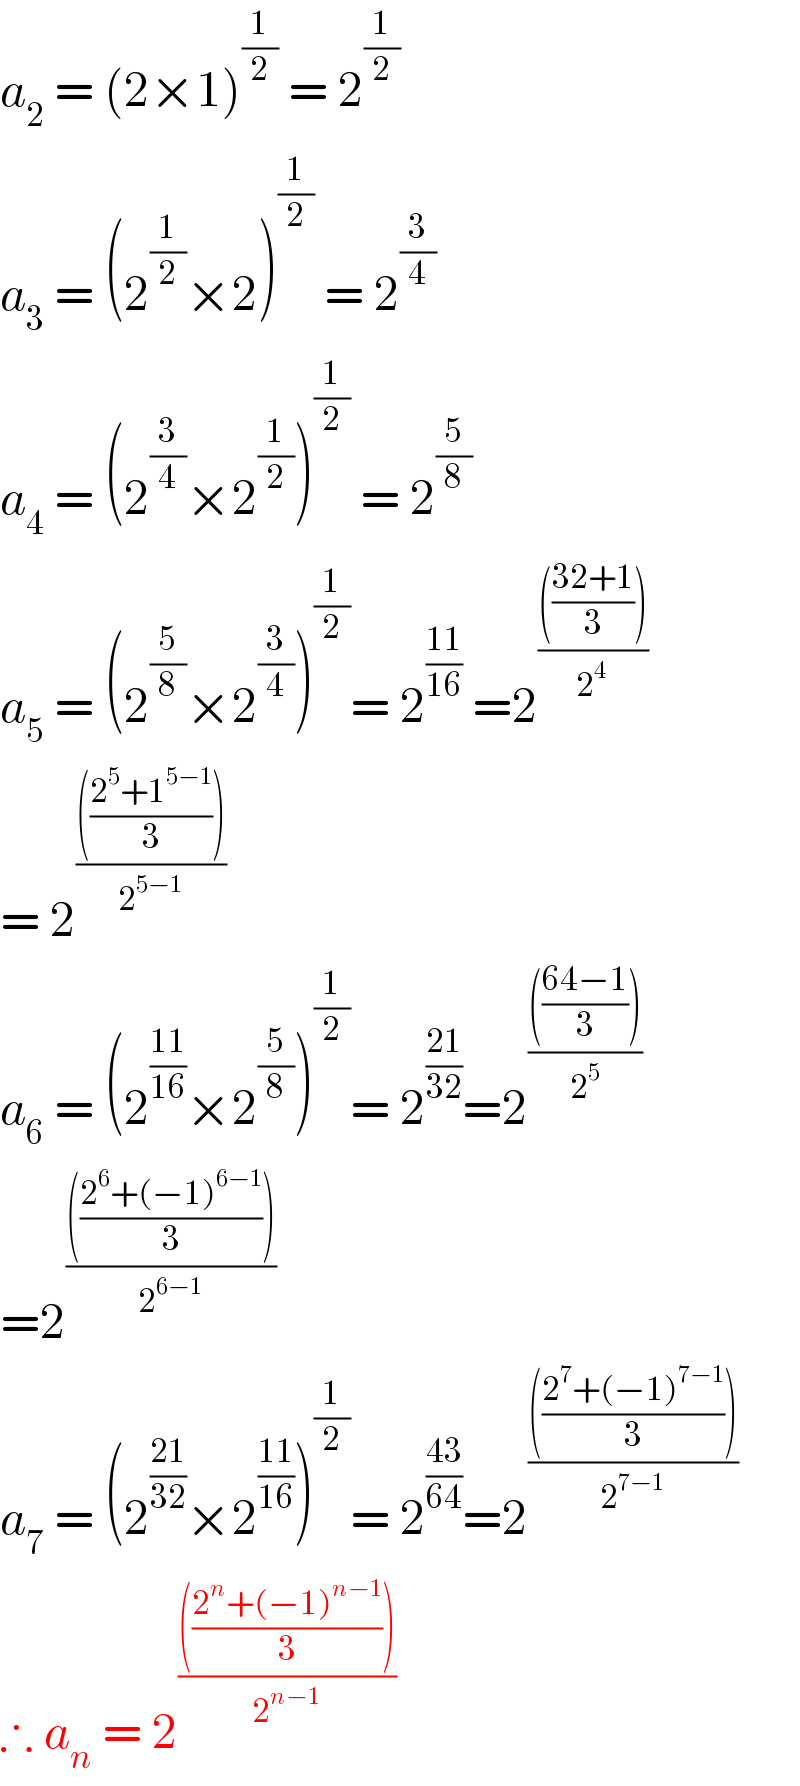 a_2  = (2×1)^(1/2)  = 2^(1/2)   a_3  = (2^(1/2) ×2)^(1/2)  = 2^(3/4)   a_4  = (2^(3/4) ×2^(1/2) )^(1/2)  = 2^(5/8)   a_5  = (2^(5/8) ×2^(3/4) )^(1/2) = 2^((11)/(16))  =2^(((((32+1)/3)))/2^(4 ) )   = 2^(((((2^5 +1^(5−1) )/3)))/2^(5−1) )   a_6  = (2^((11)/(16)) ×2^(5/8) )^(1/2) = 2^((21)/(32)) =2^(((((64−1)/3)))/2^5 )   =2^(((((2^6 +(−1)^(6−1) )/3)))/2^(6−1) )   a_7  = (2^((21)/(32)) ×2^((11)/(16)) )^(1/2) = 2^((43)/(64)) =2^(((((2^7 +(−1)^(7−1) )/3)))/2^(7−1) )   ∴ a_n  = 2^(((((2^n +(−1)^(n−1) )/3)))/2^(n−1) )   